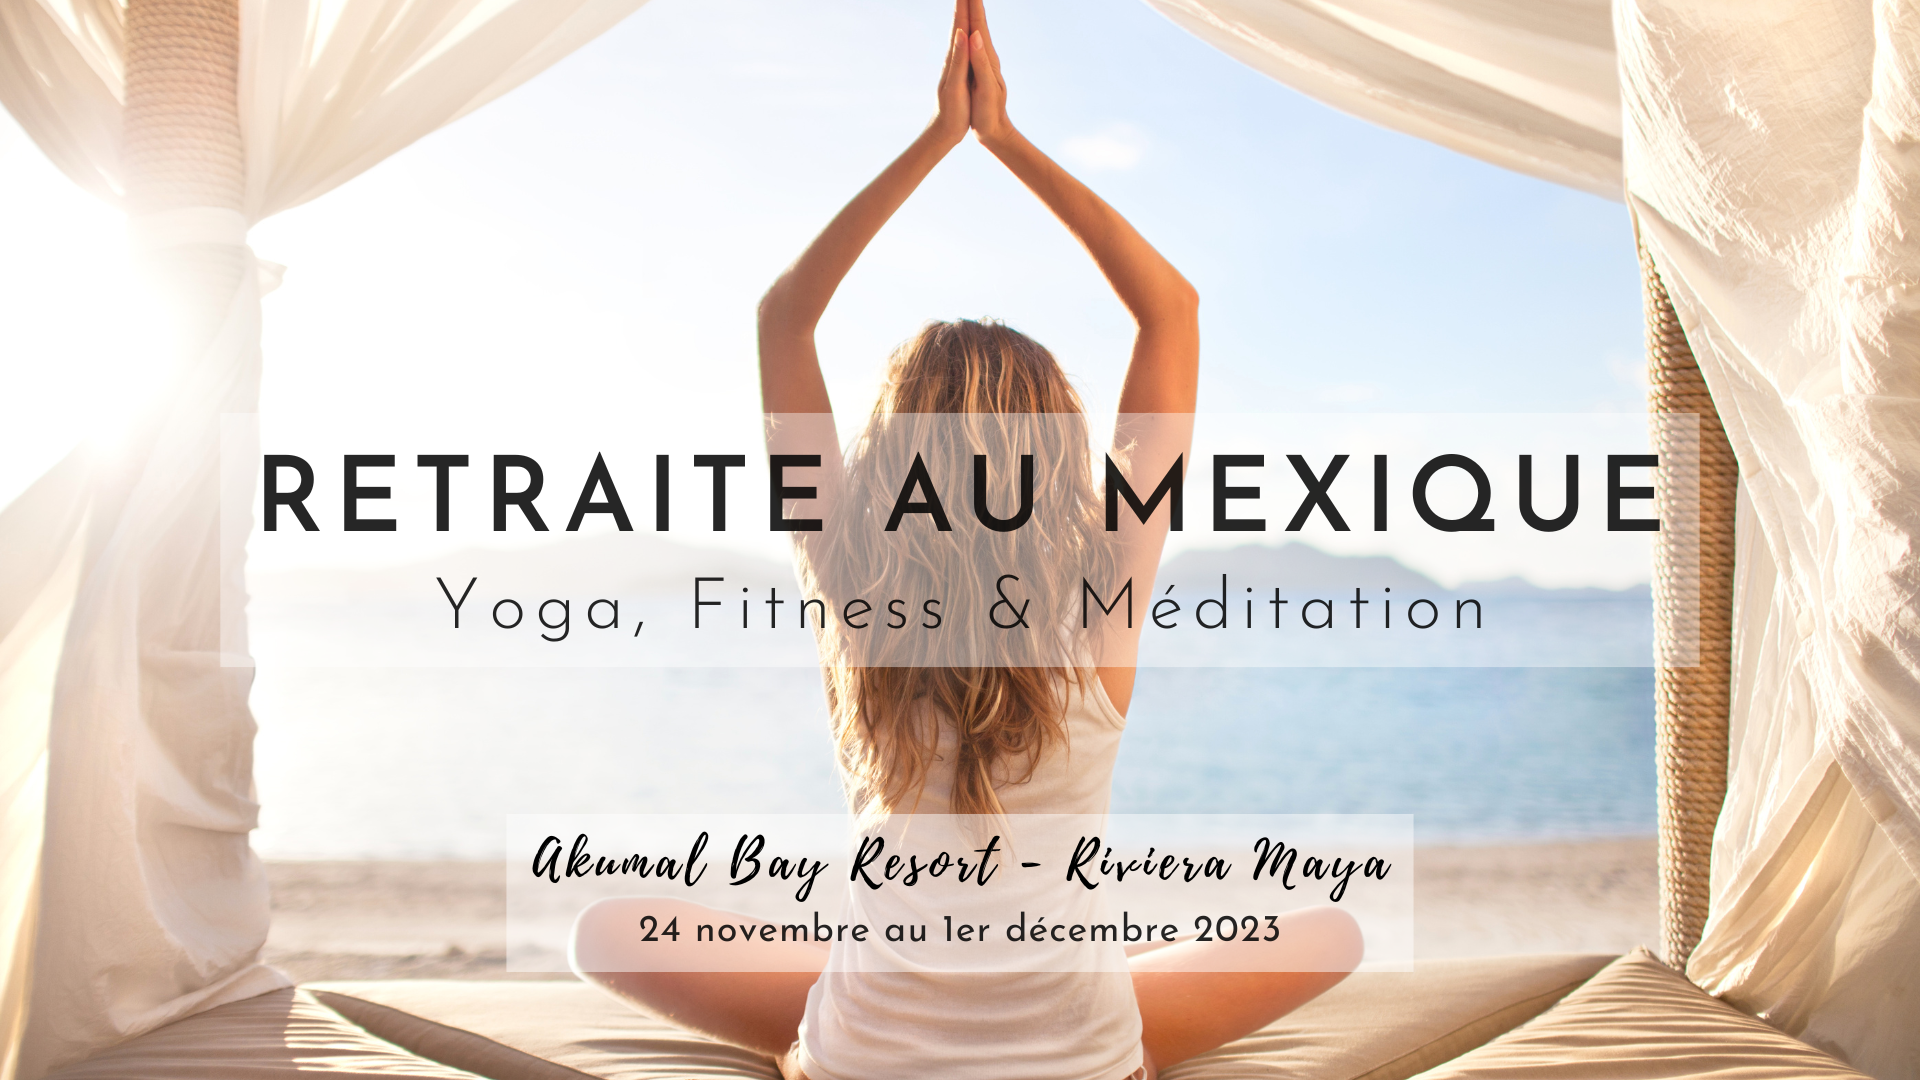 Retraite yoga & fitness au mexique